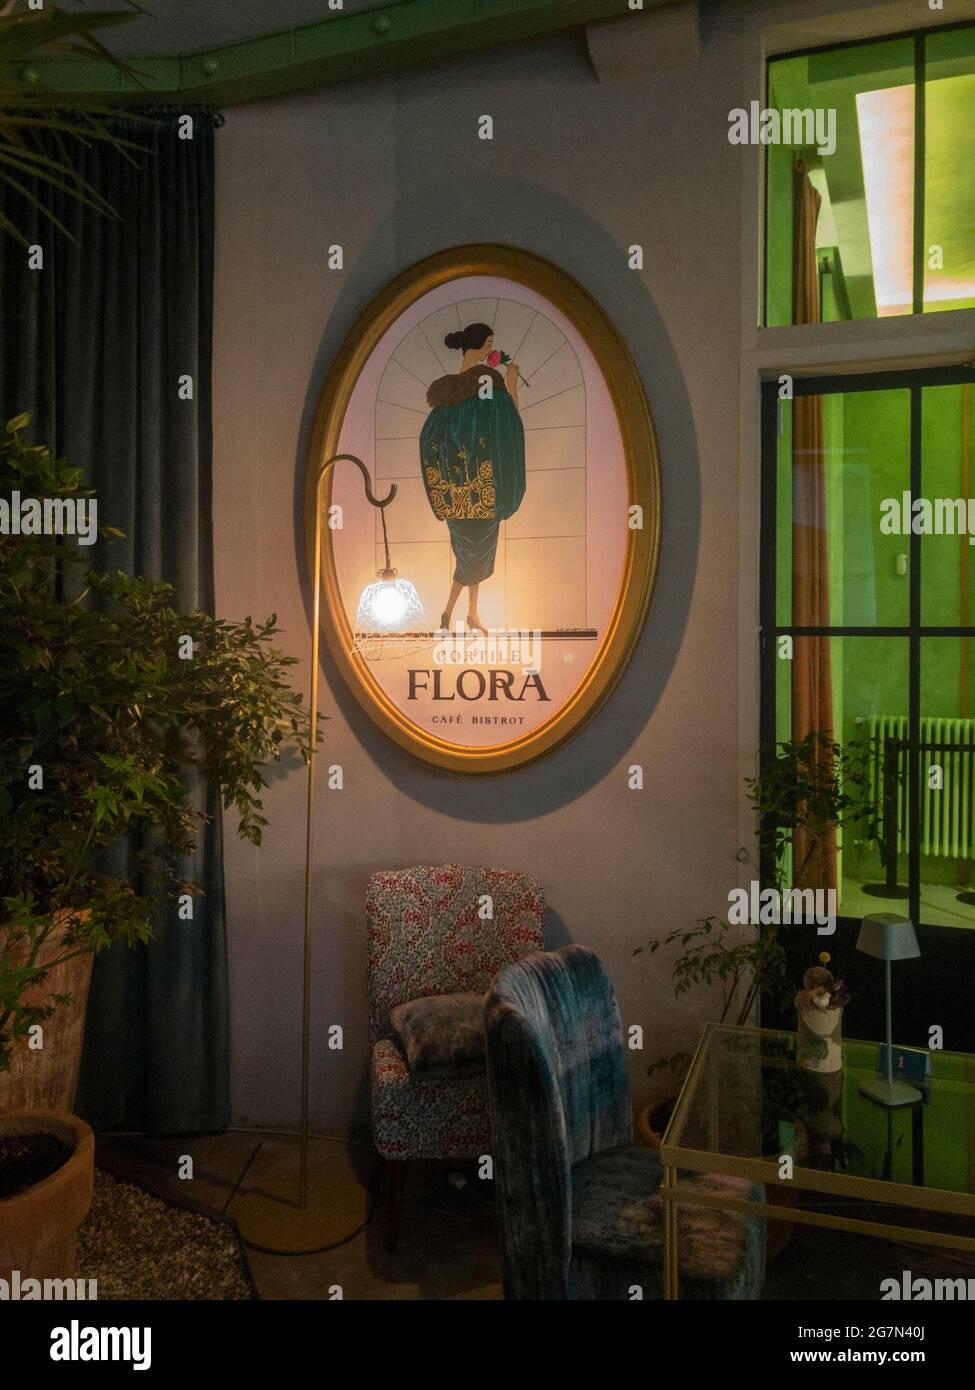 Moscova District Market, caffè e bar del negozio di abbigliamento in via  Alessandro volta a Milano, 07-15-2021. Italia. Mobili di design. Flora Café  Bistrot Foto stock - Alamy